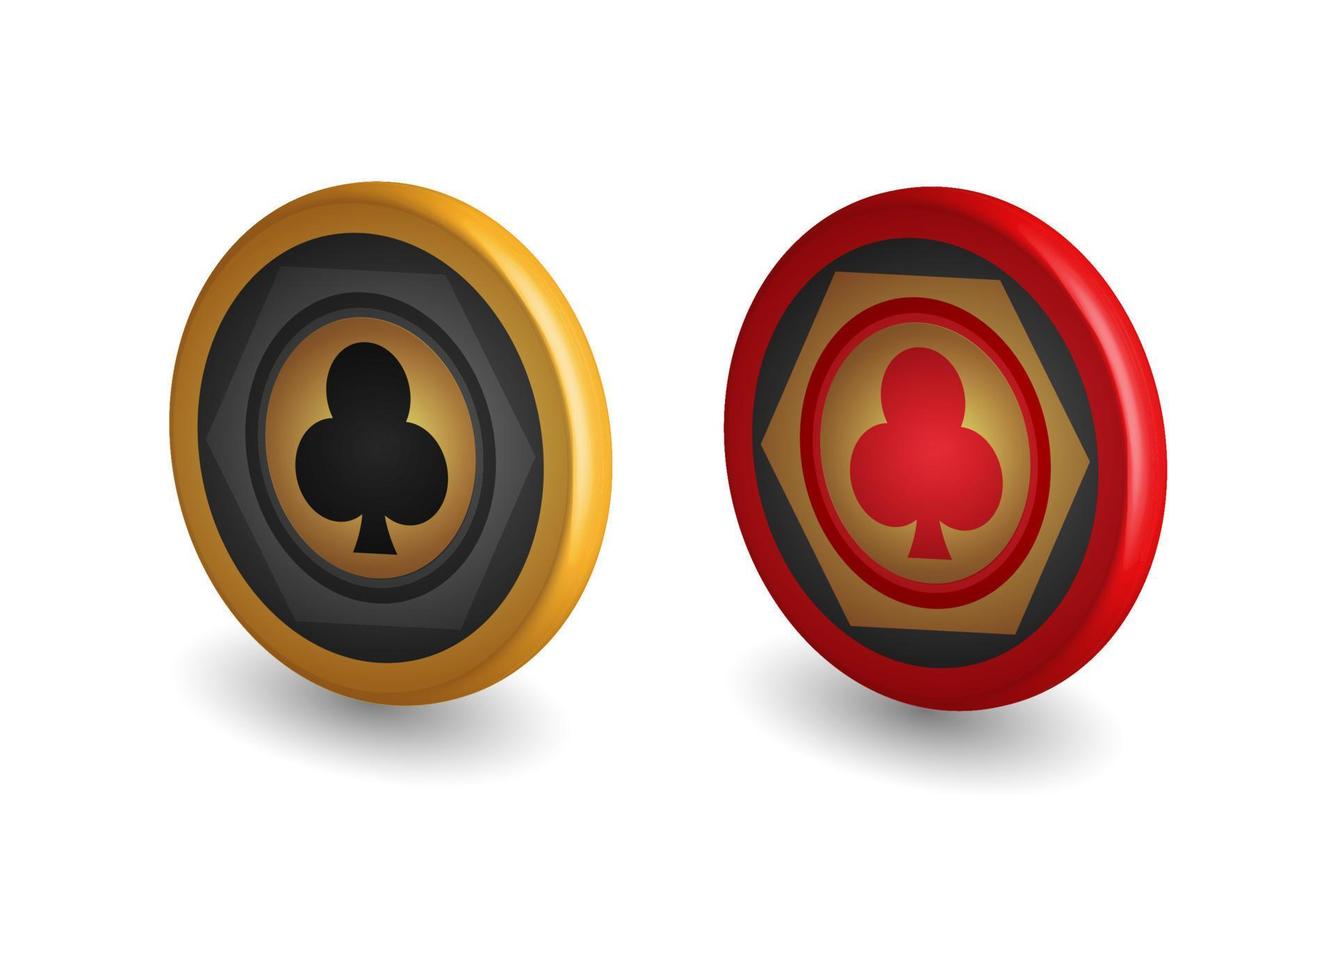 fichas de pôquer de ouro e vermelho, com símbolos do clube, elementos de design de jogos, ilustração vetorial 3d, vetor